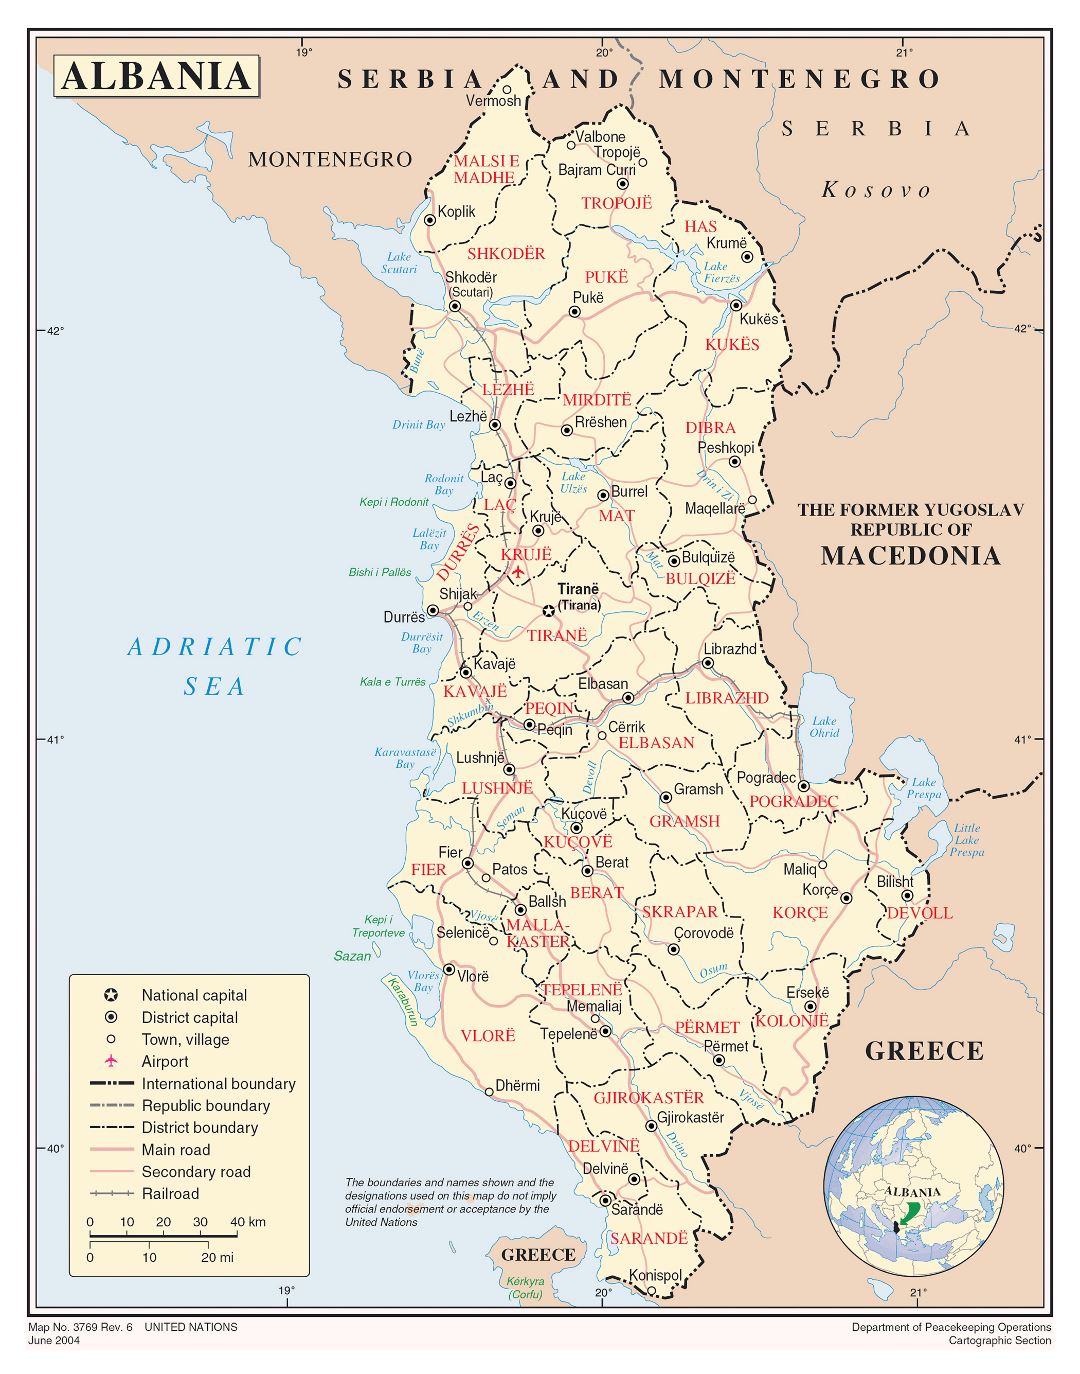 Большая детальная политико-административная карта Албании с главными дорогами, городами, аэропортами